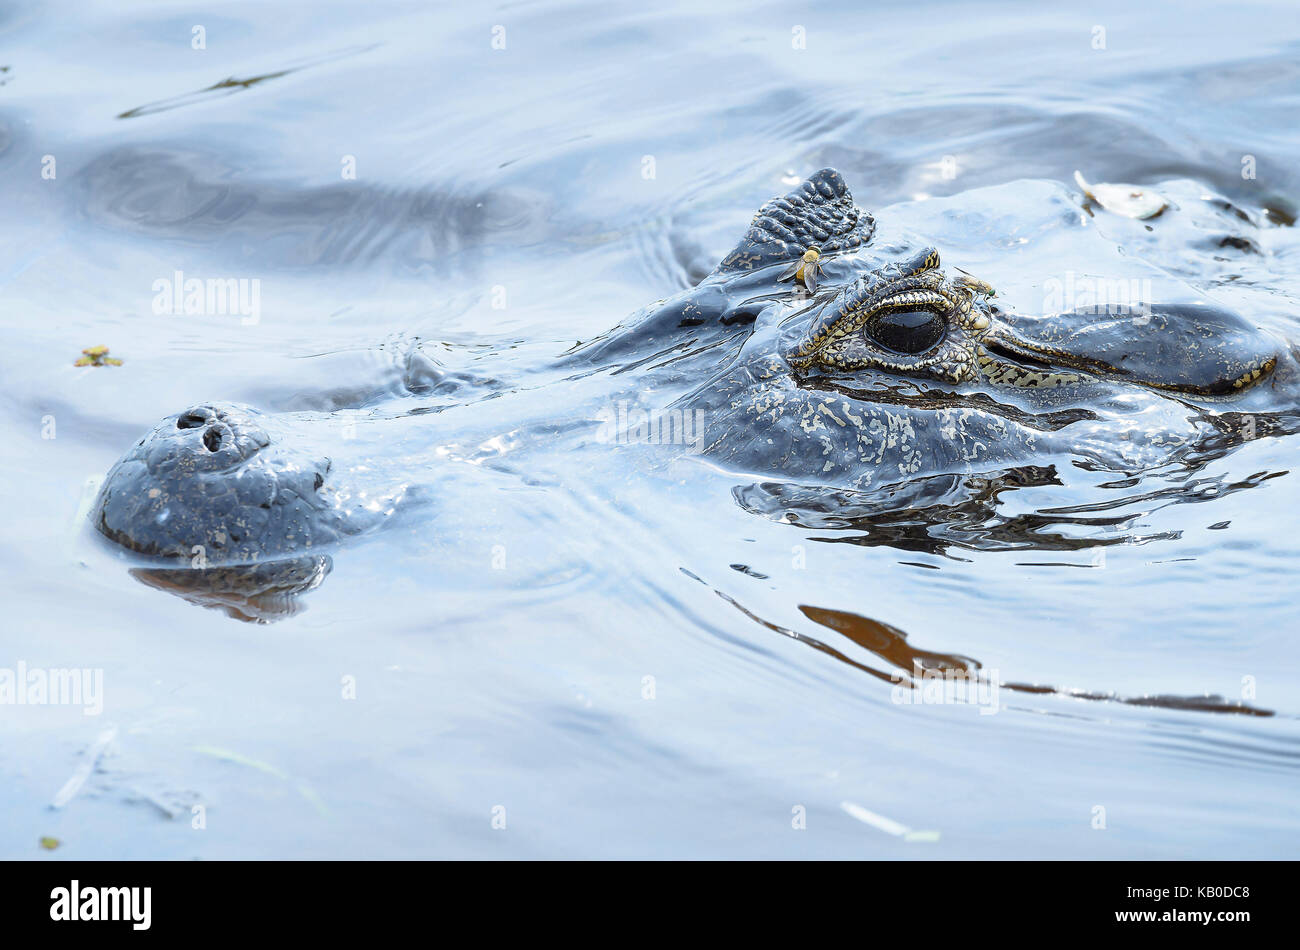 Alligator Schwimmen und schweben auf dem Wasser der Pantanal, Brasilien. Nur mit dem Kopf aus dem Wasser lauert für einige Beute Alligator, Tier Stockfoto